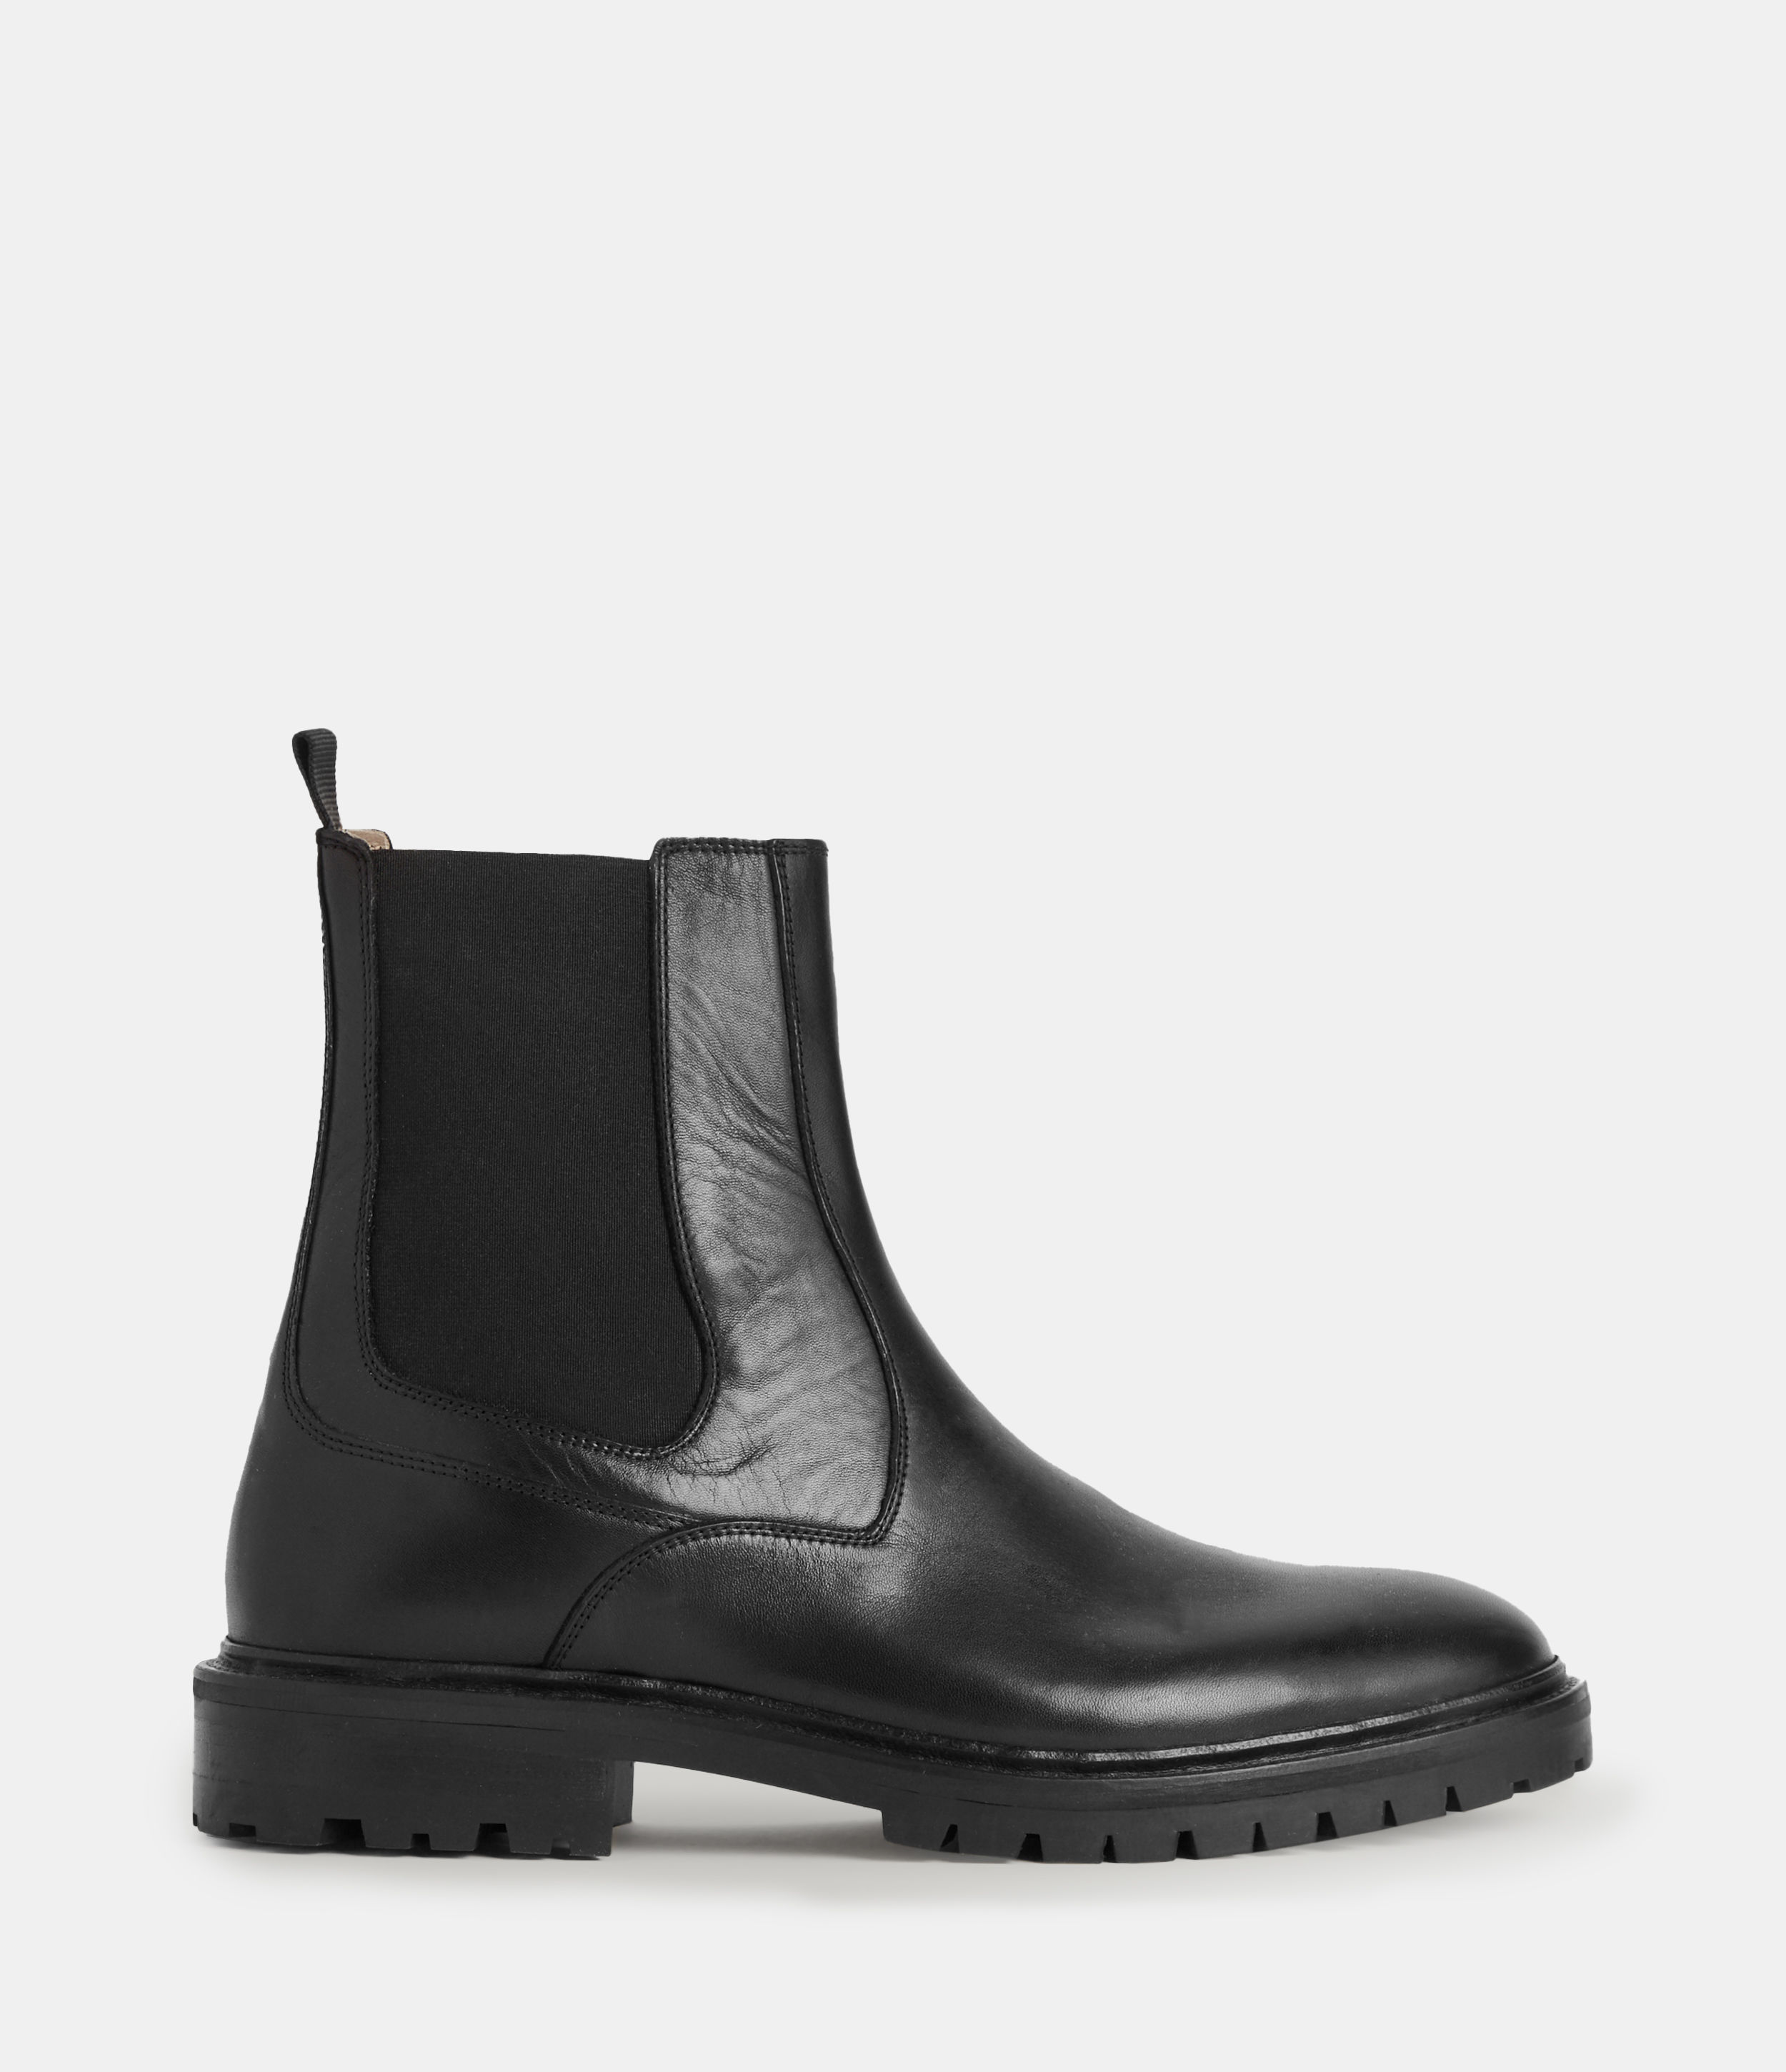 AllSaints Men’s Melos Leather Chelsea Boots, Black, Size: UK 11/US 12/EU 45